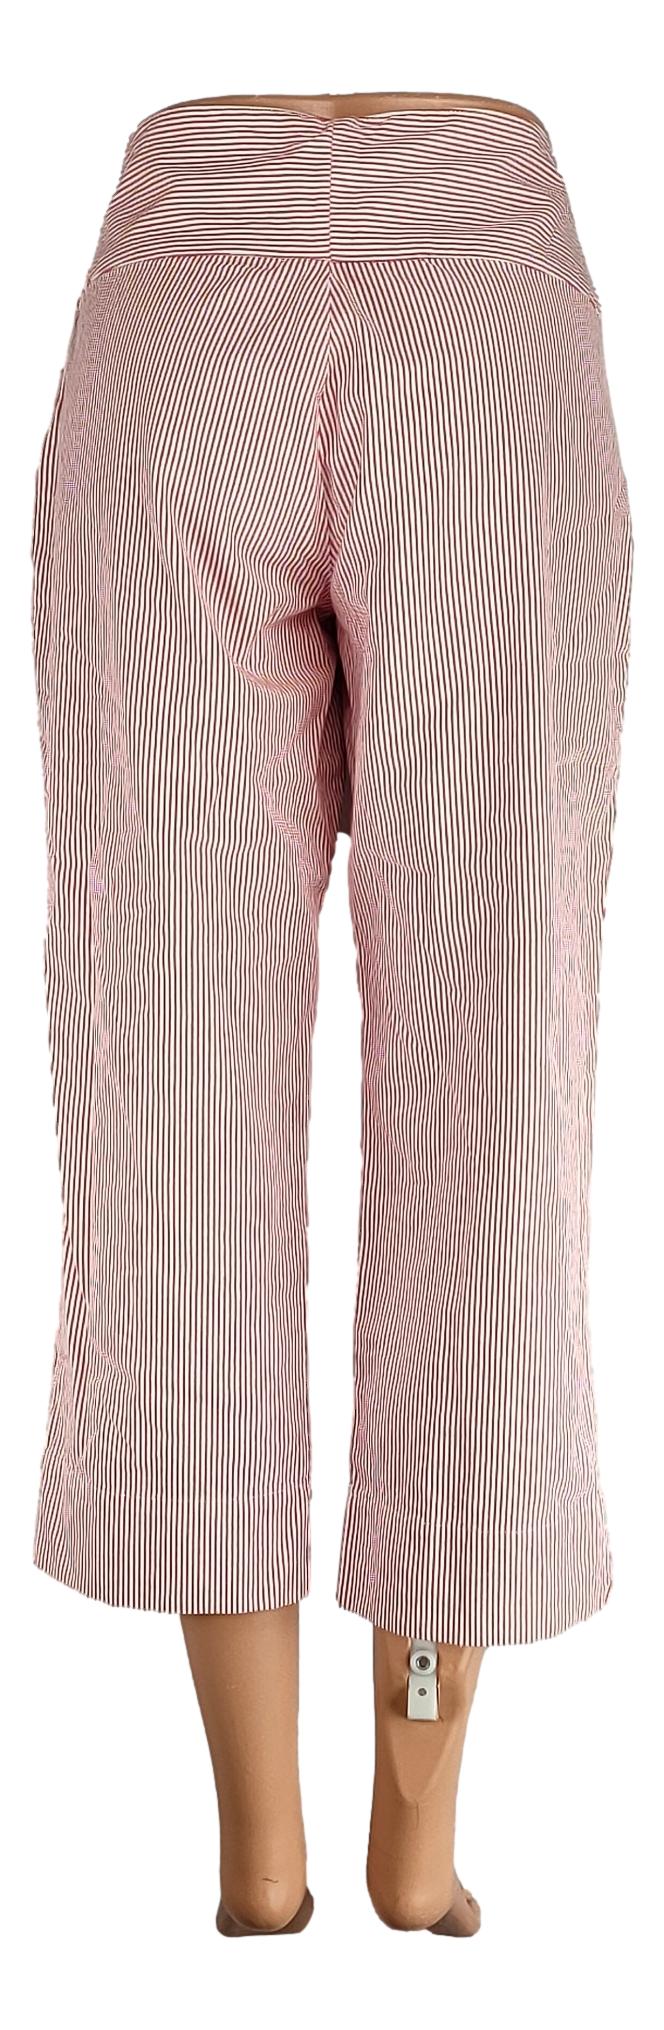 Pantalon Sans Marque -Taille 40